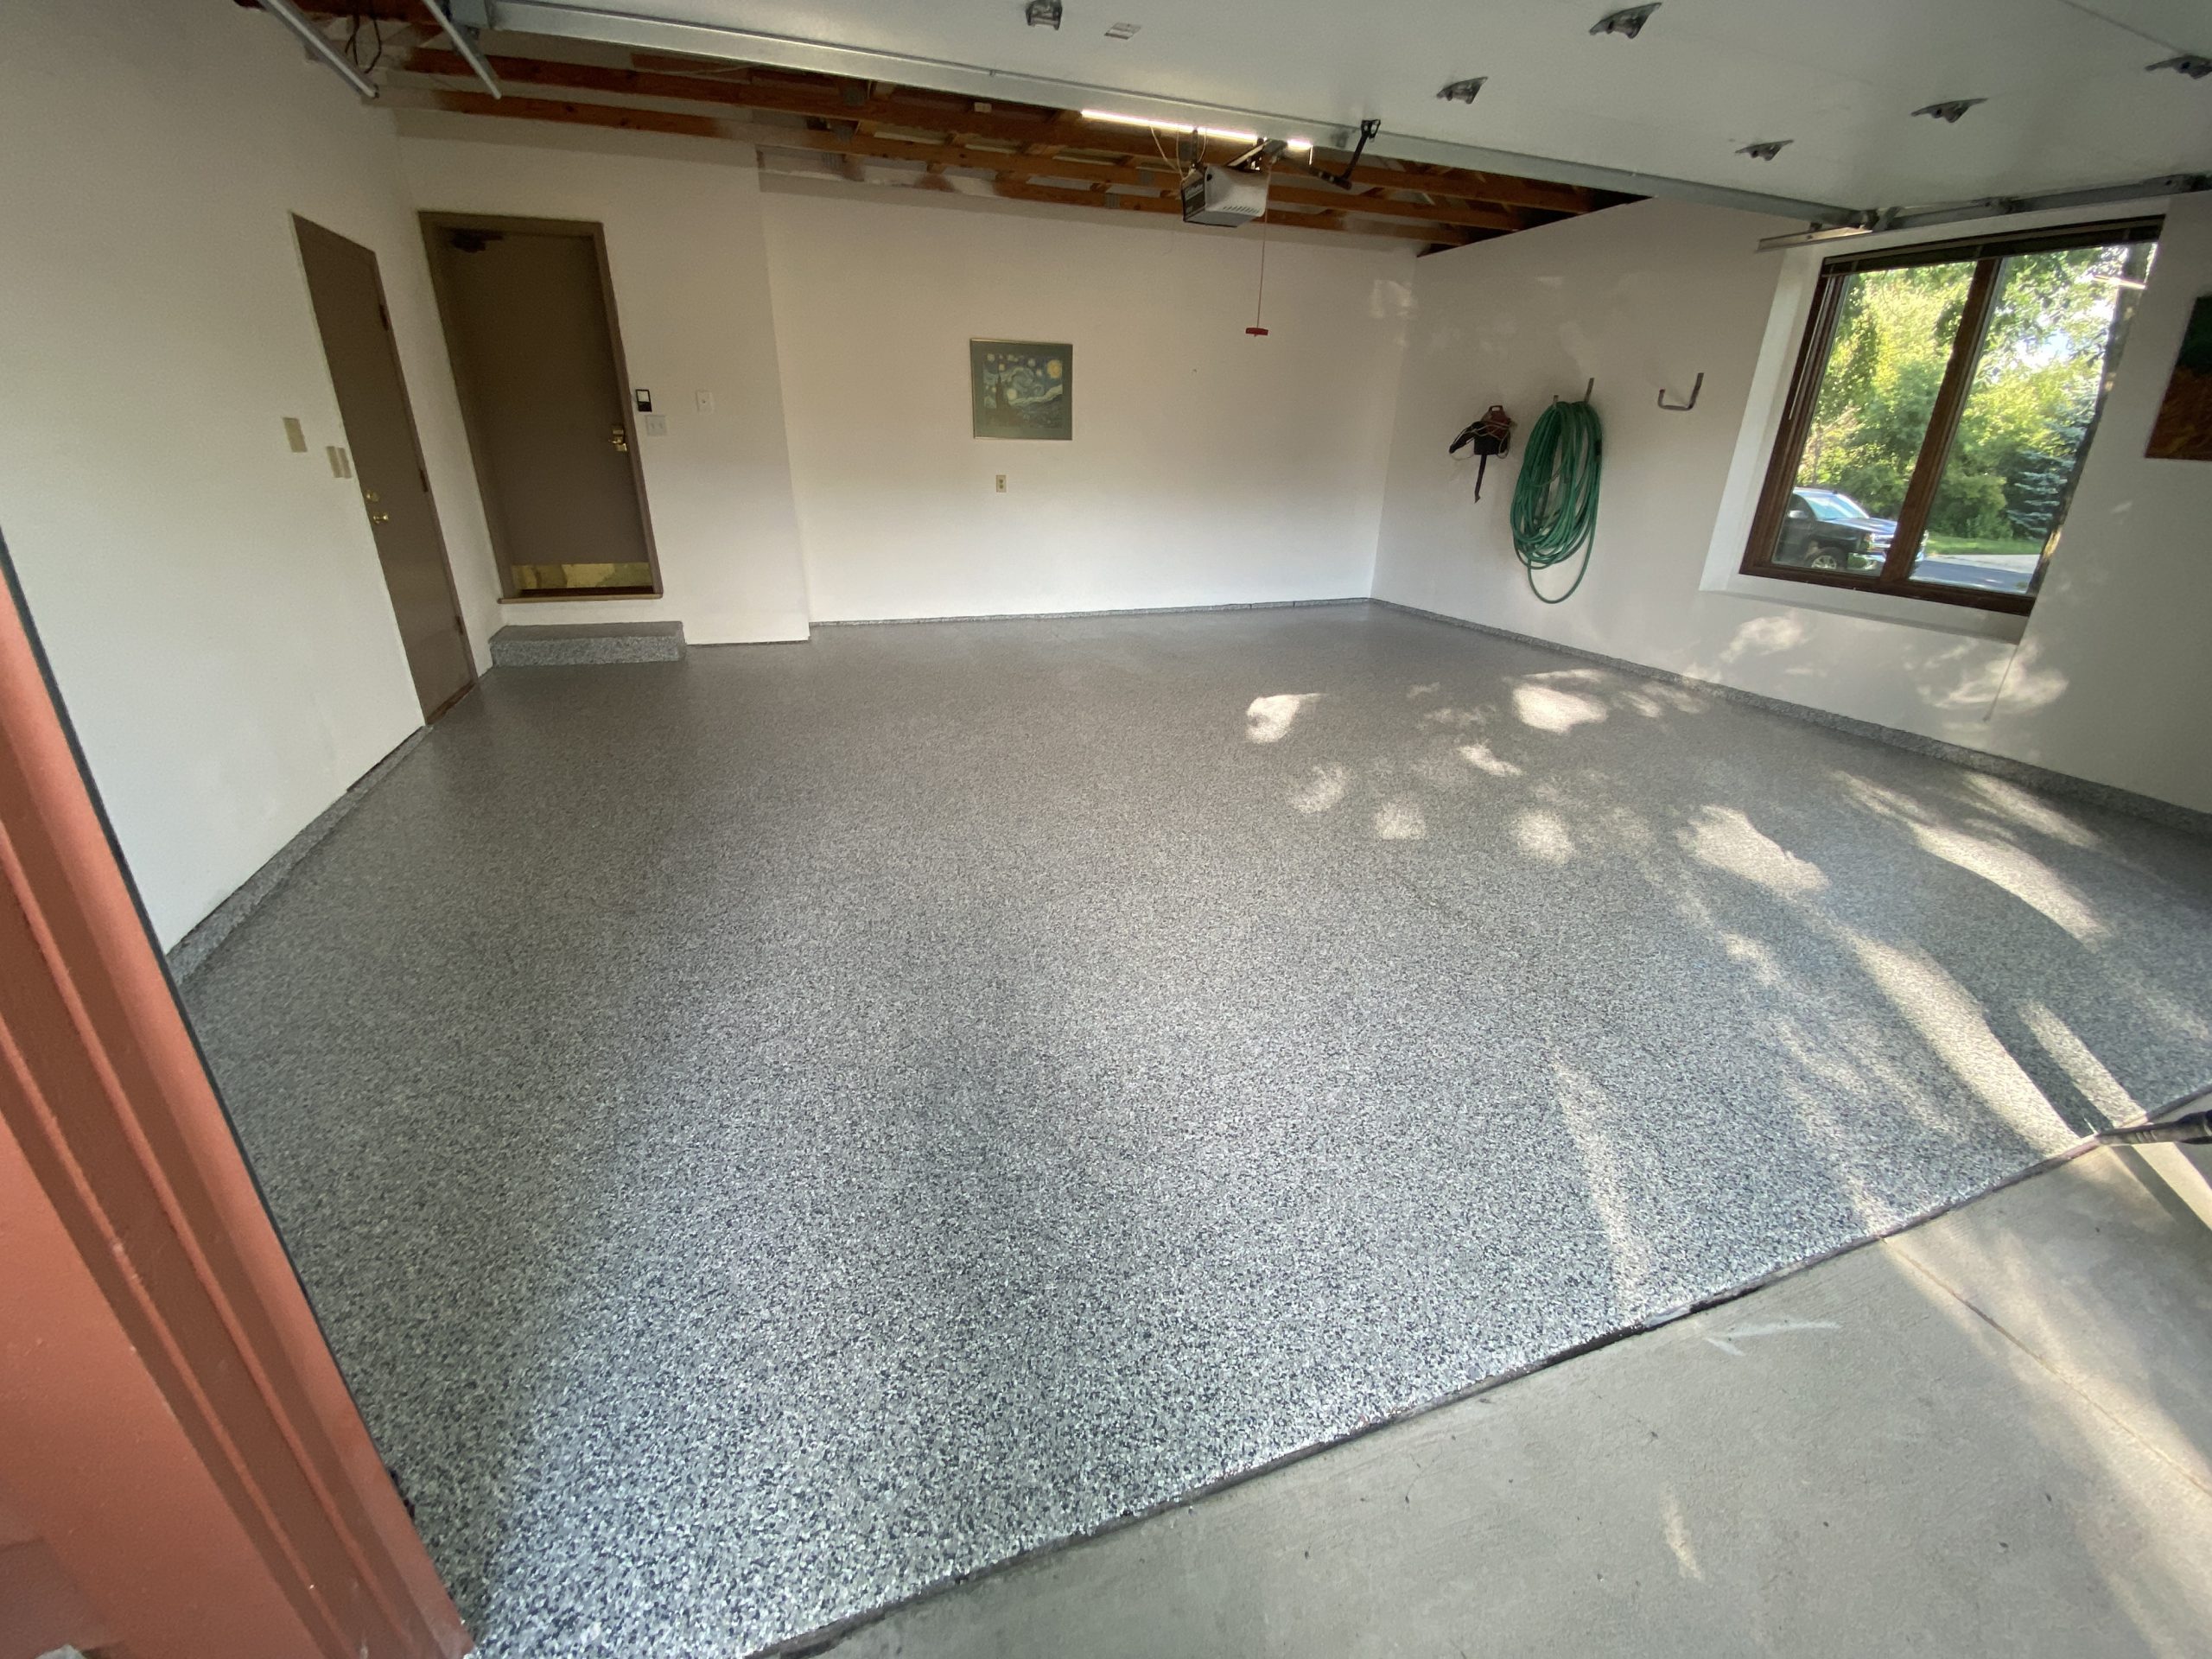 Residential garage floor coating